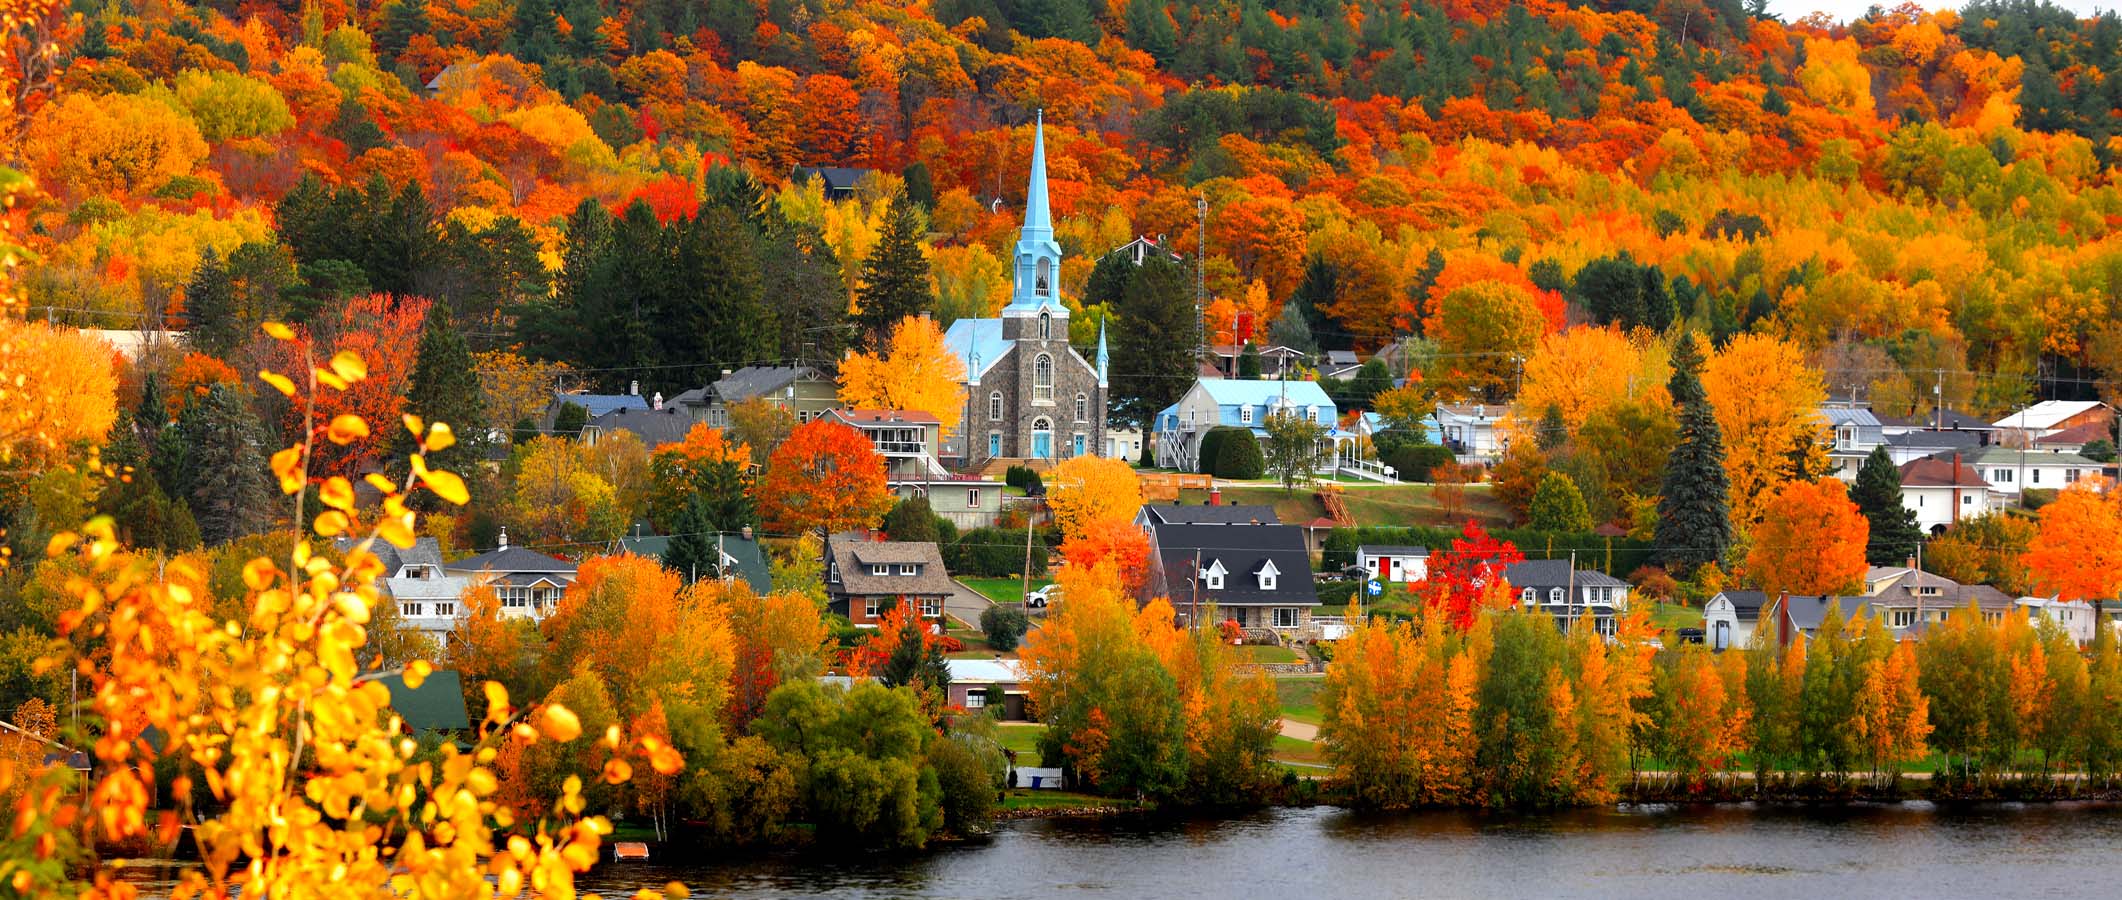 Vue frontale d'un paysage québécois automnal où, au premier plan, on peut aprecevoir une église au bord de l'eau et entourée d'arbres aux couleurs vives